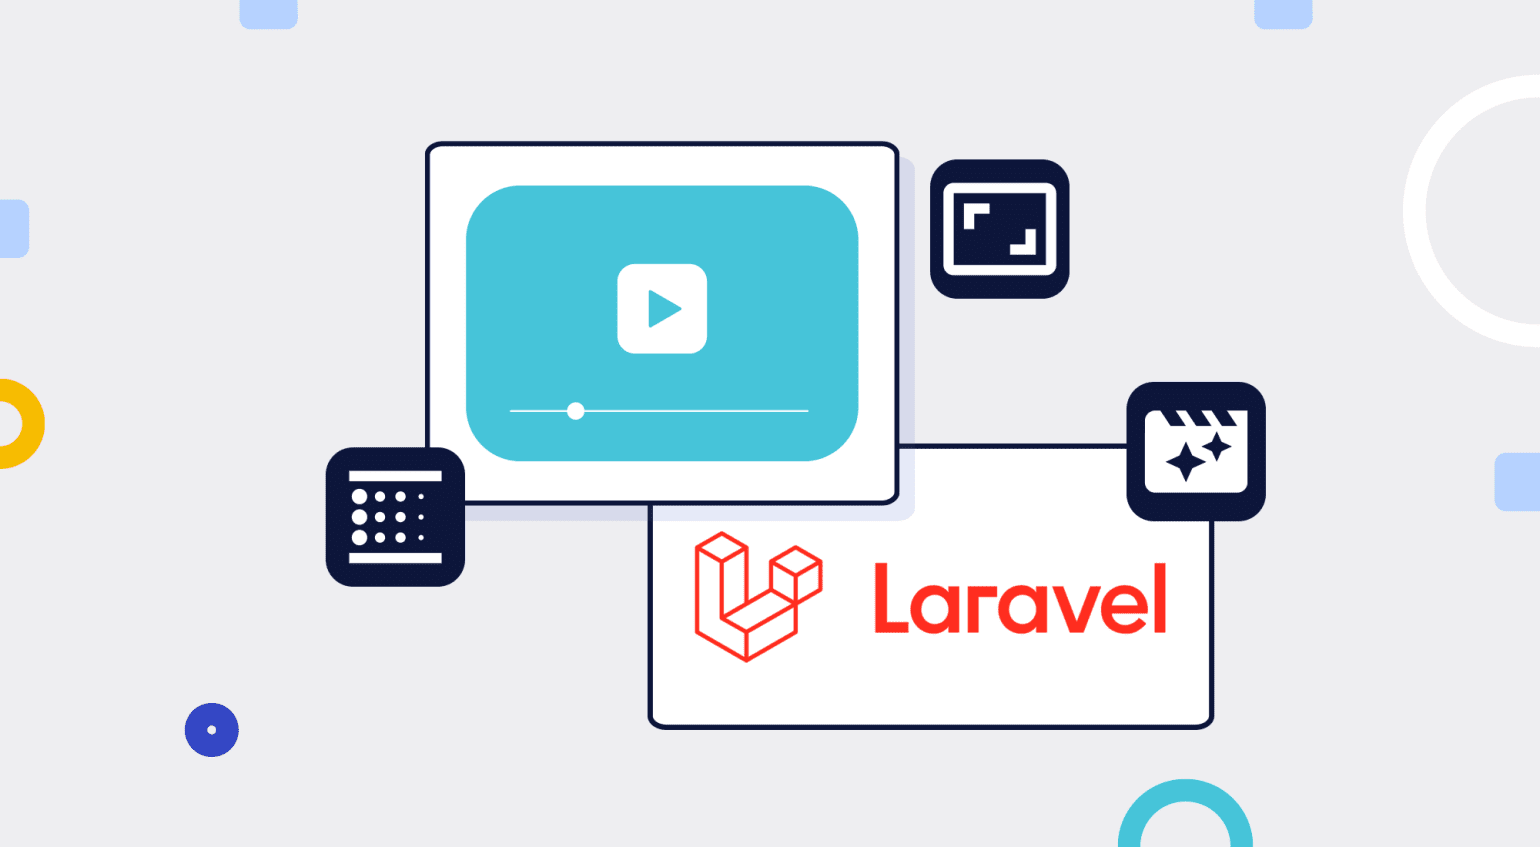 Tối ưu hóa video trên Laravel giúp tăng tốc độ tải trang web của bạn, giúp khách hàng trải nghiệm trang web một cách mượt mà. Hãy xem hình ảnh liên quan để biết thêm về cách tối ưu hóa video trên Laravel.